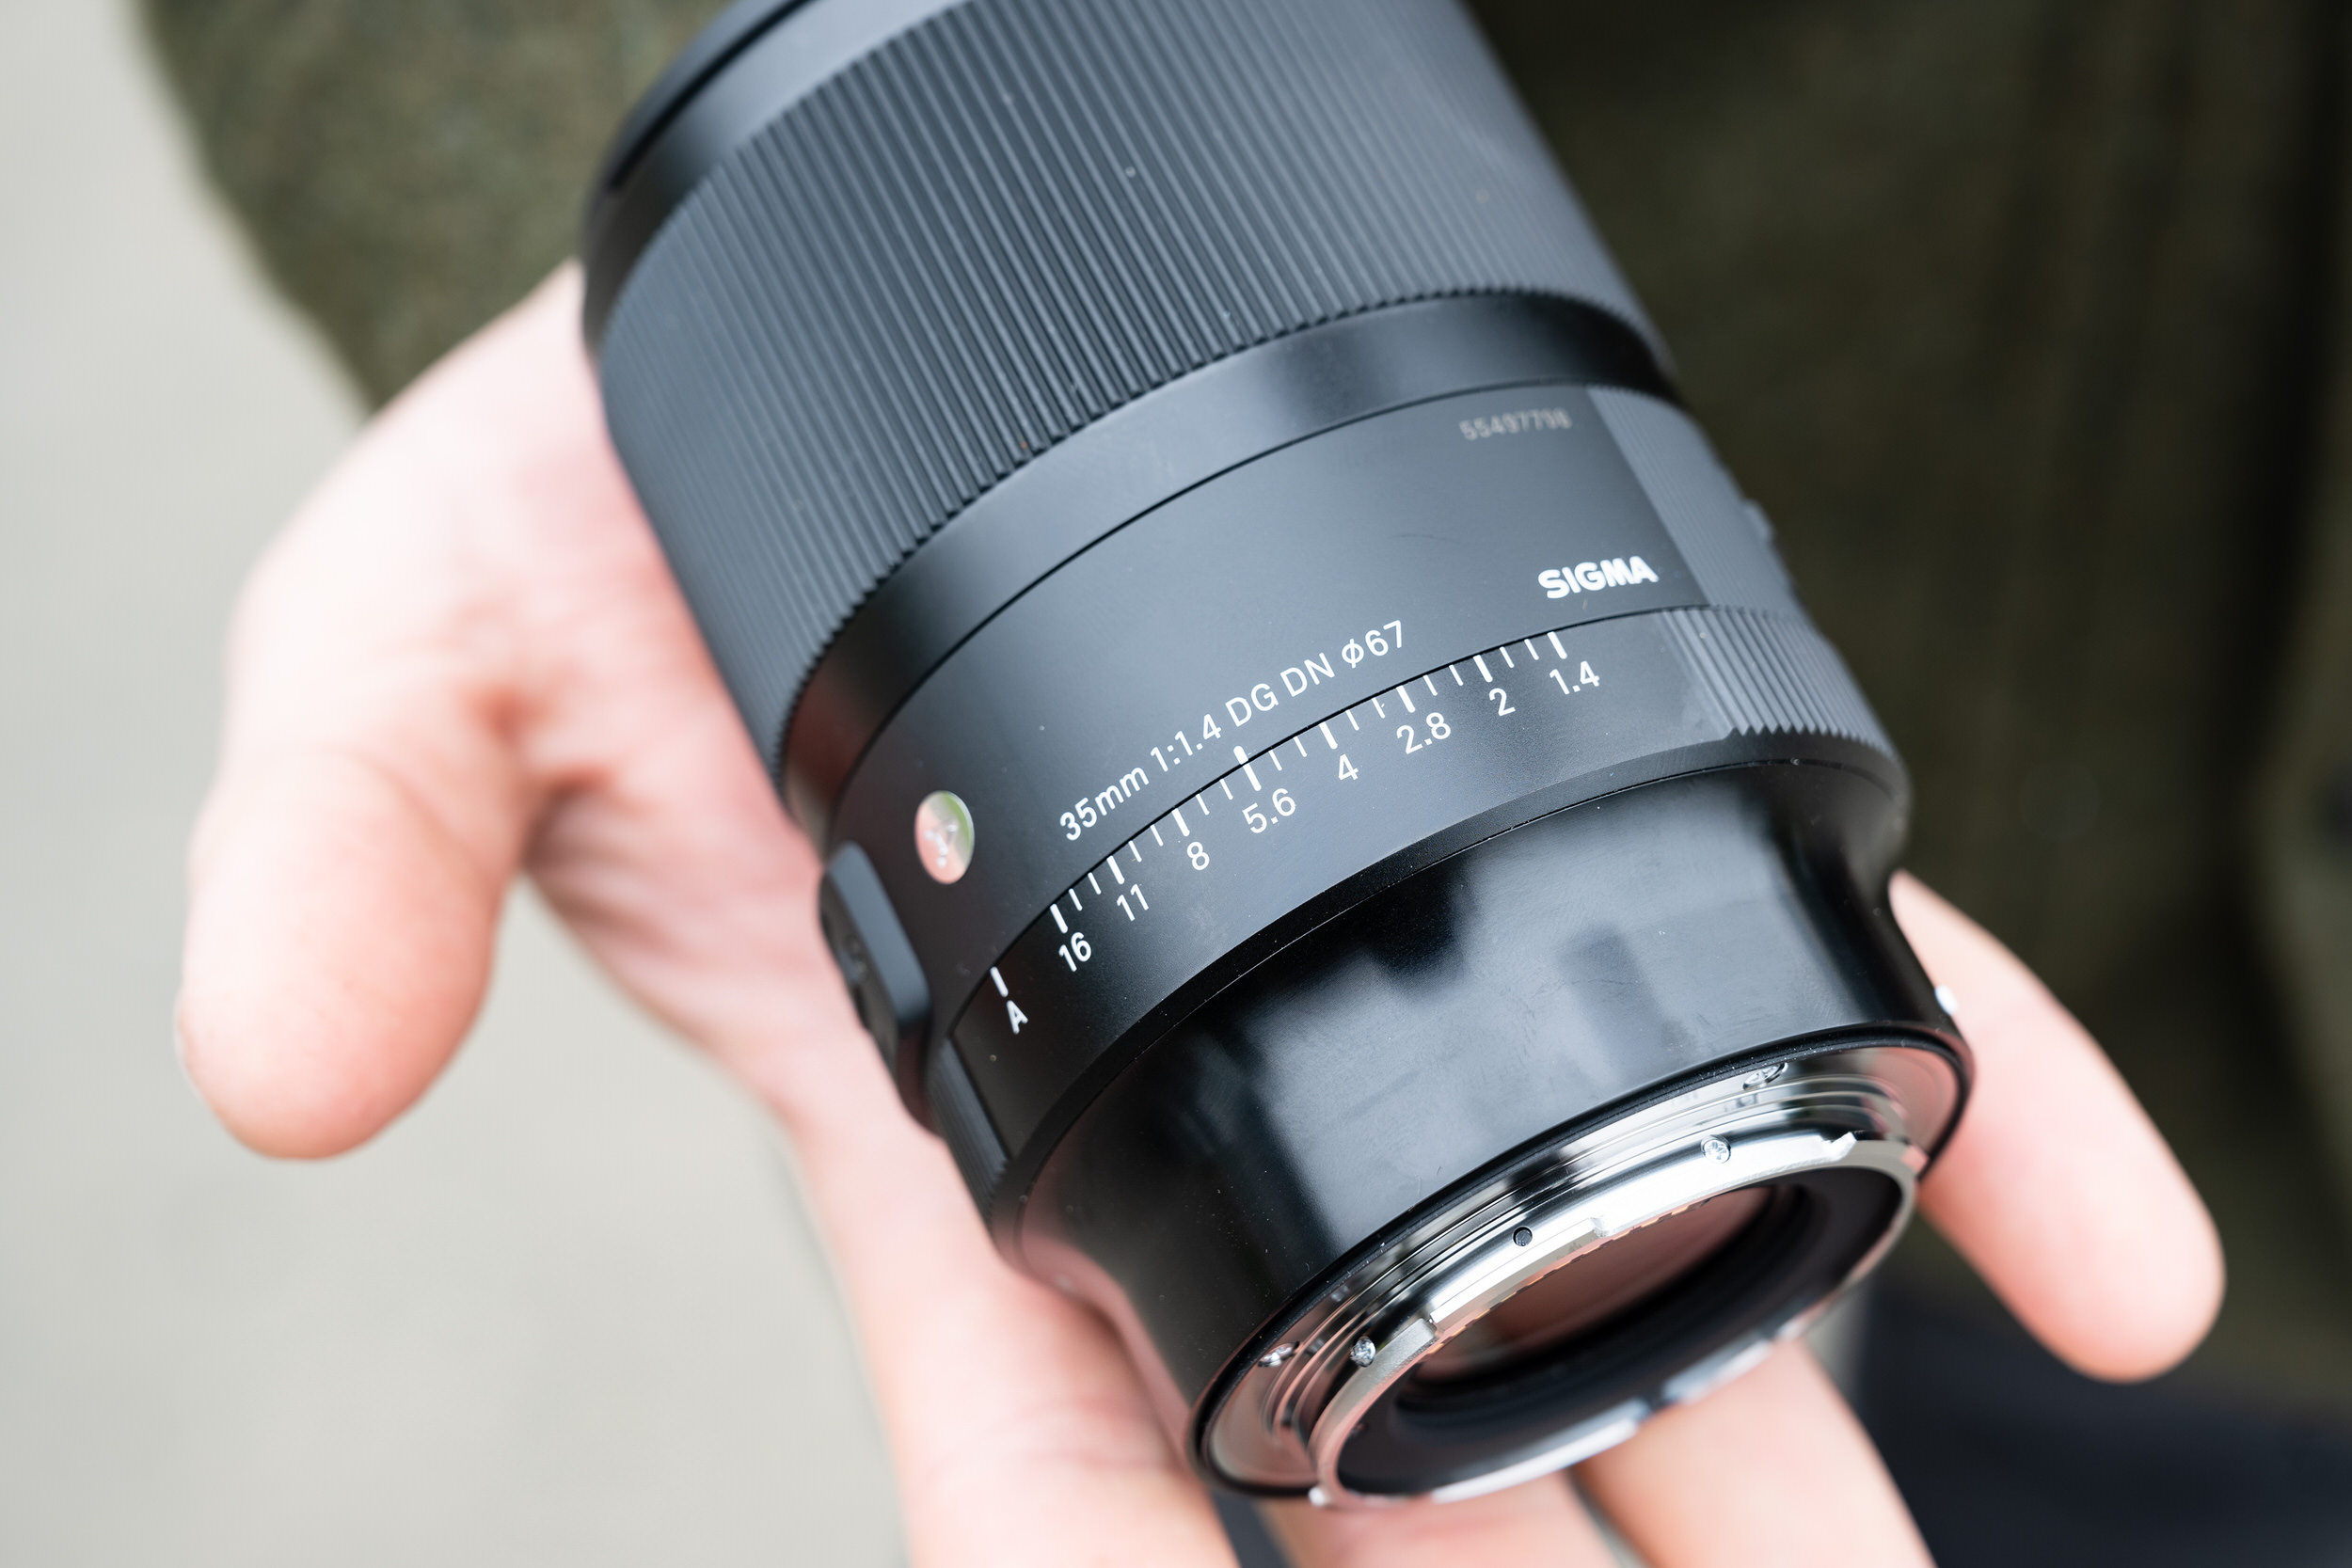 Sigma ra mắt ống kính 35mm F1.4 DG DN Art được làm mới hoàn toàn dành cho máy ảnh mirrorless